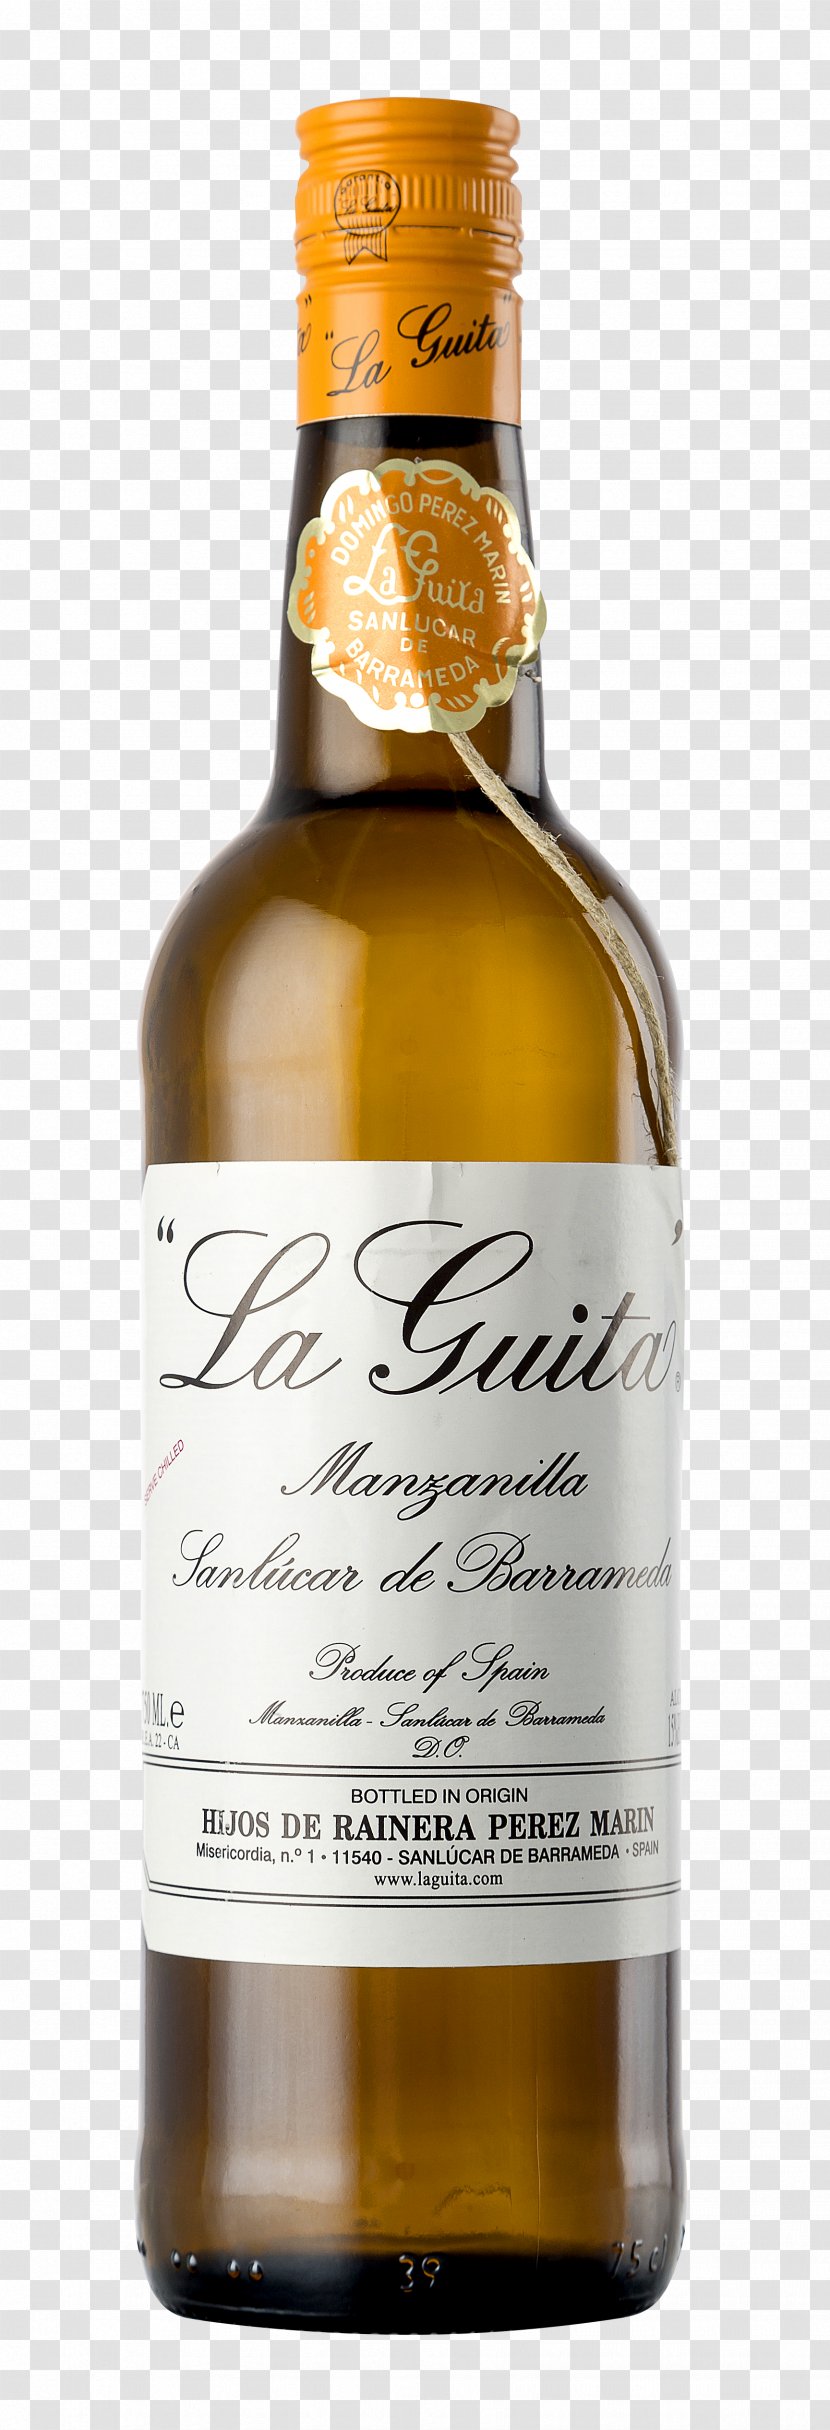 La Guita Liqueur Manzanilla Dessert Wine - Distilled Beverage Transparent PNG